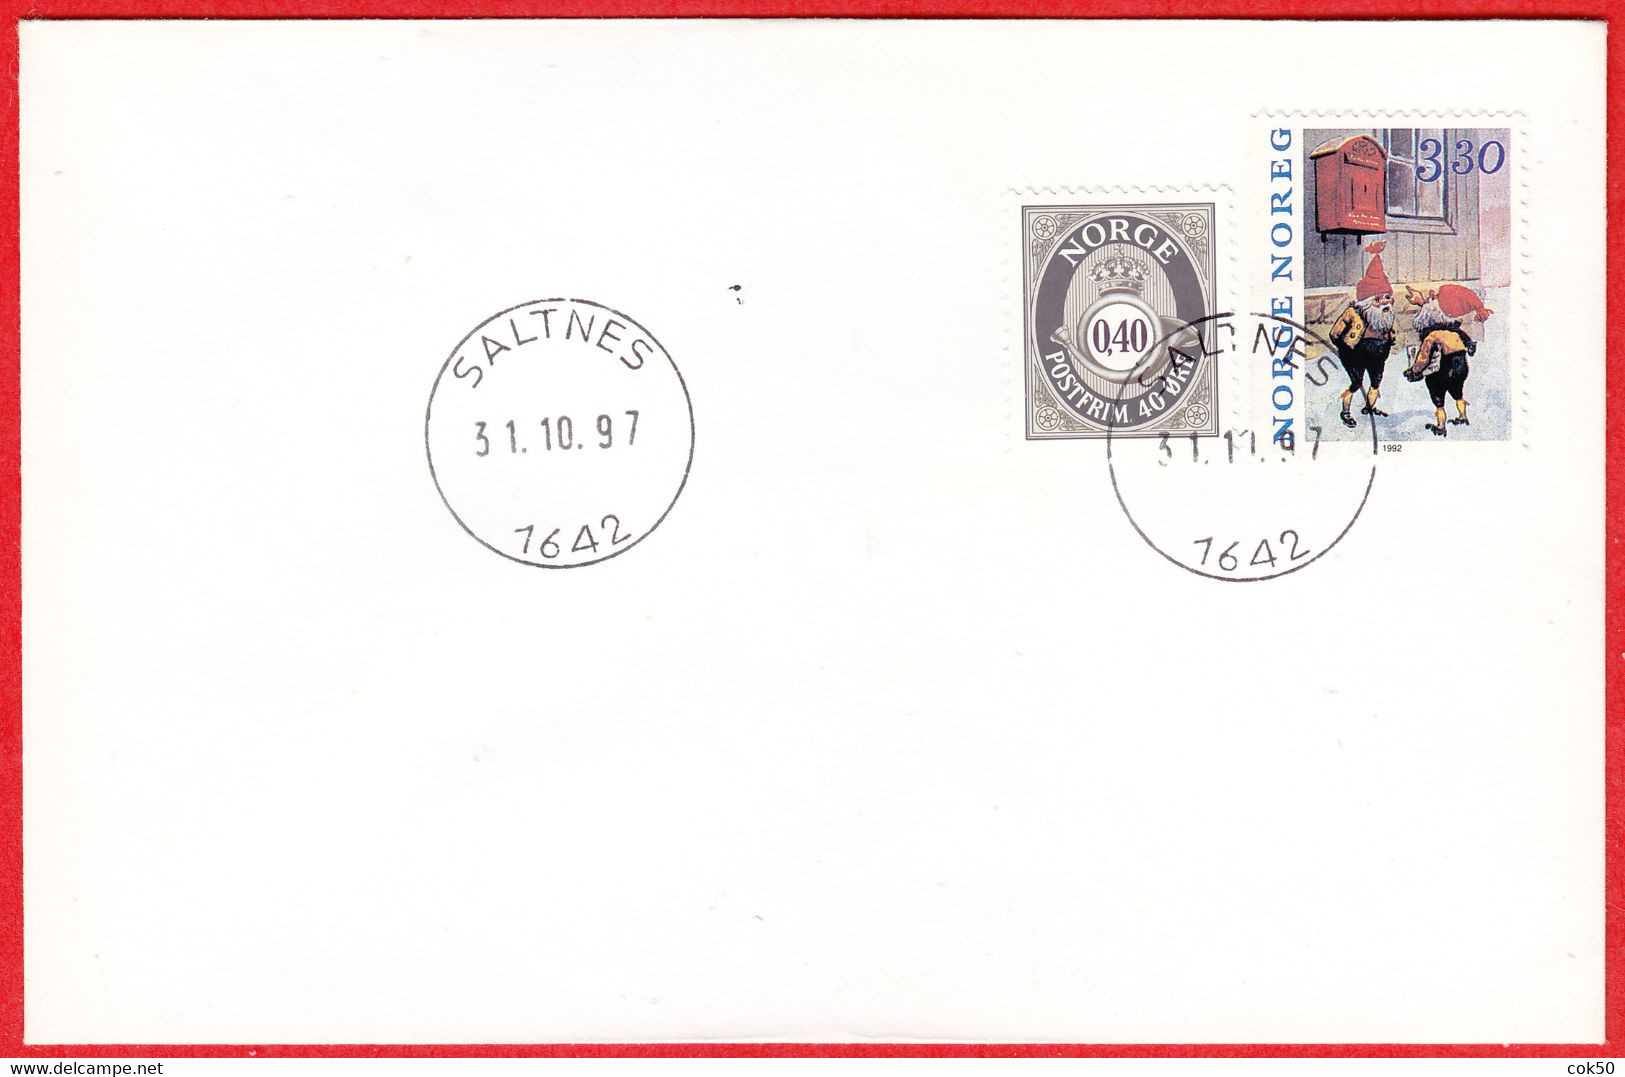 NORWAY - 1642 SALTNES 24 Mm Postmark Diameter (Østfold County) Last Day - Postoffice Closed On 1997.10.31 - Lokale Uitgaven